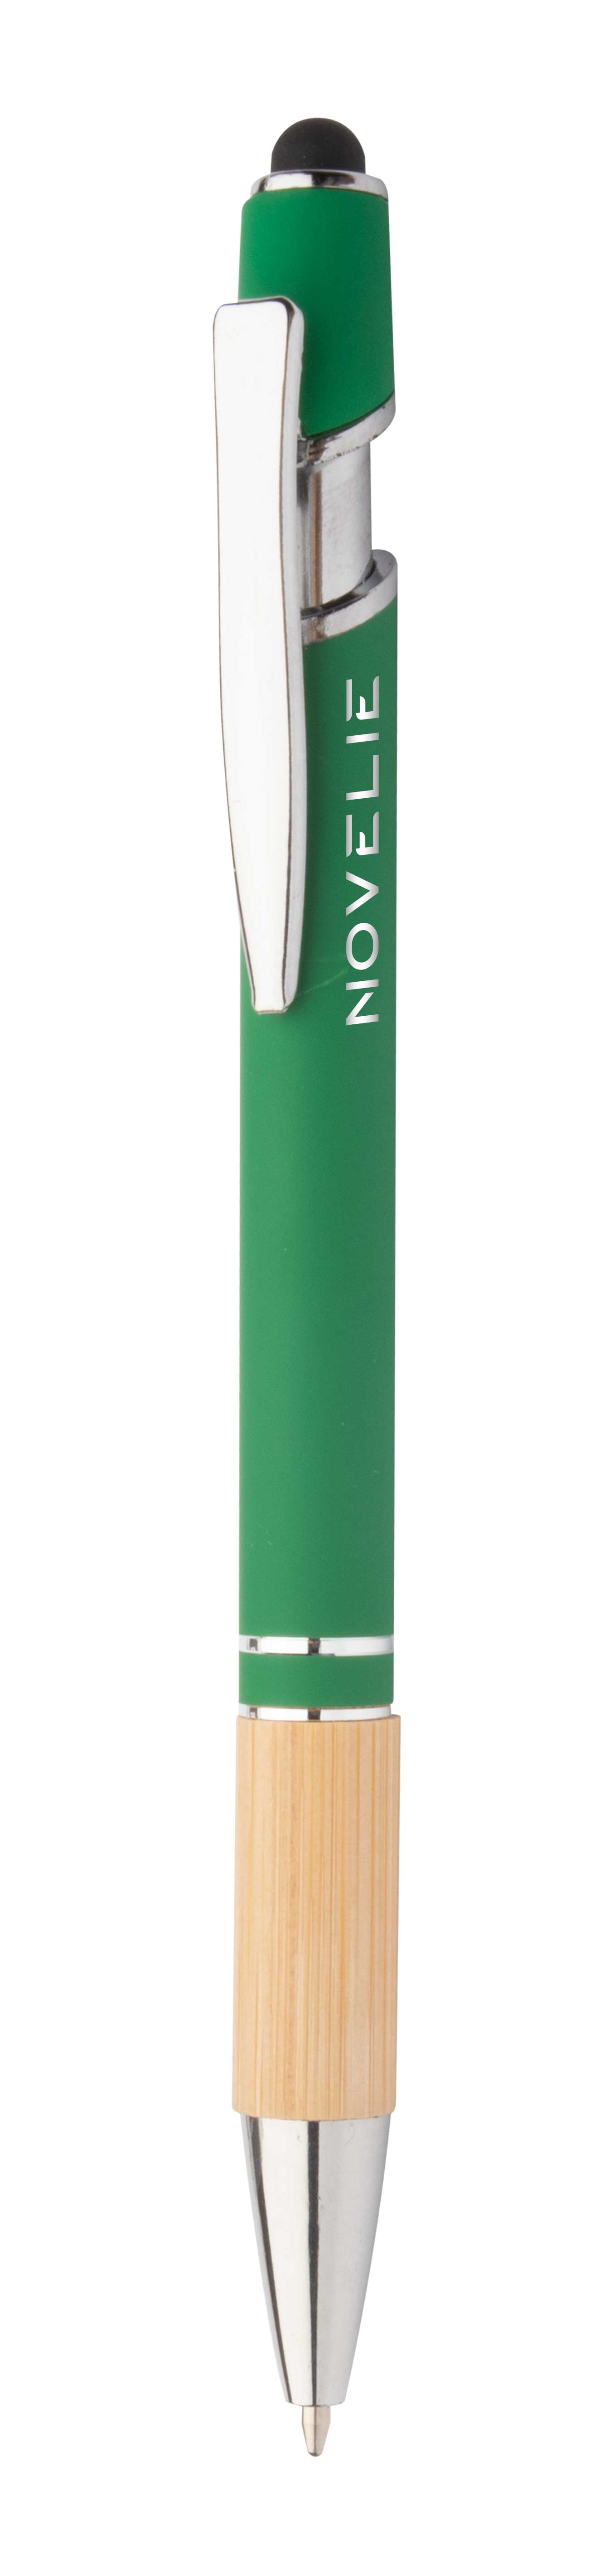 Bonnel touch ballpoint pen - green